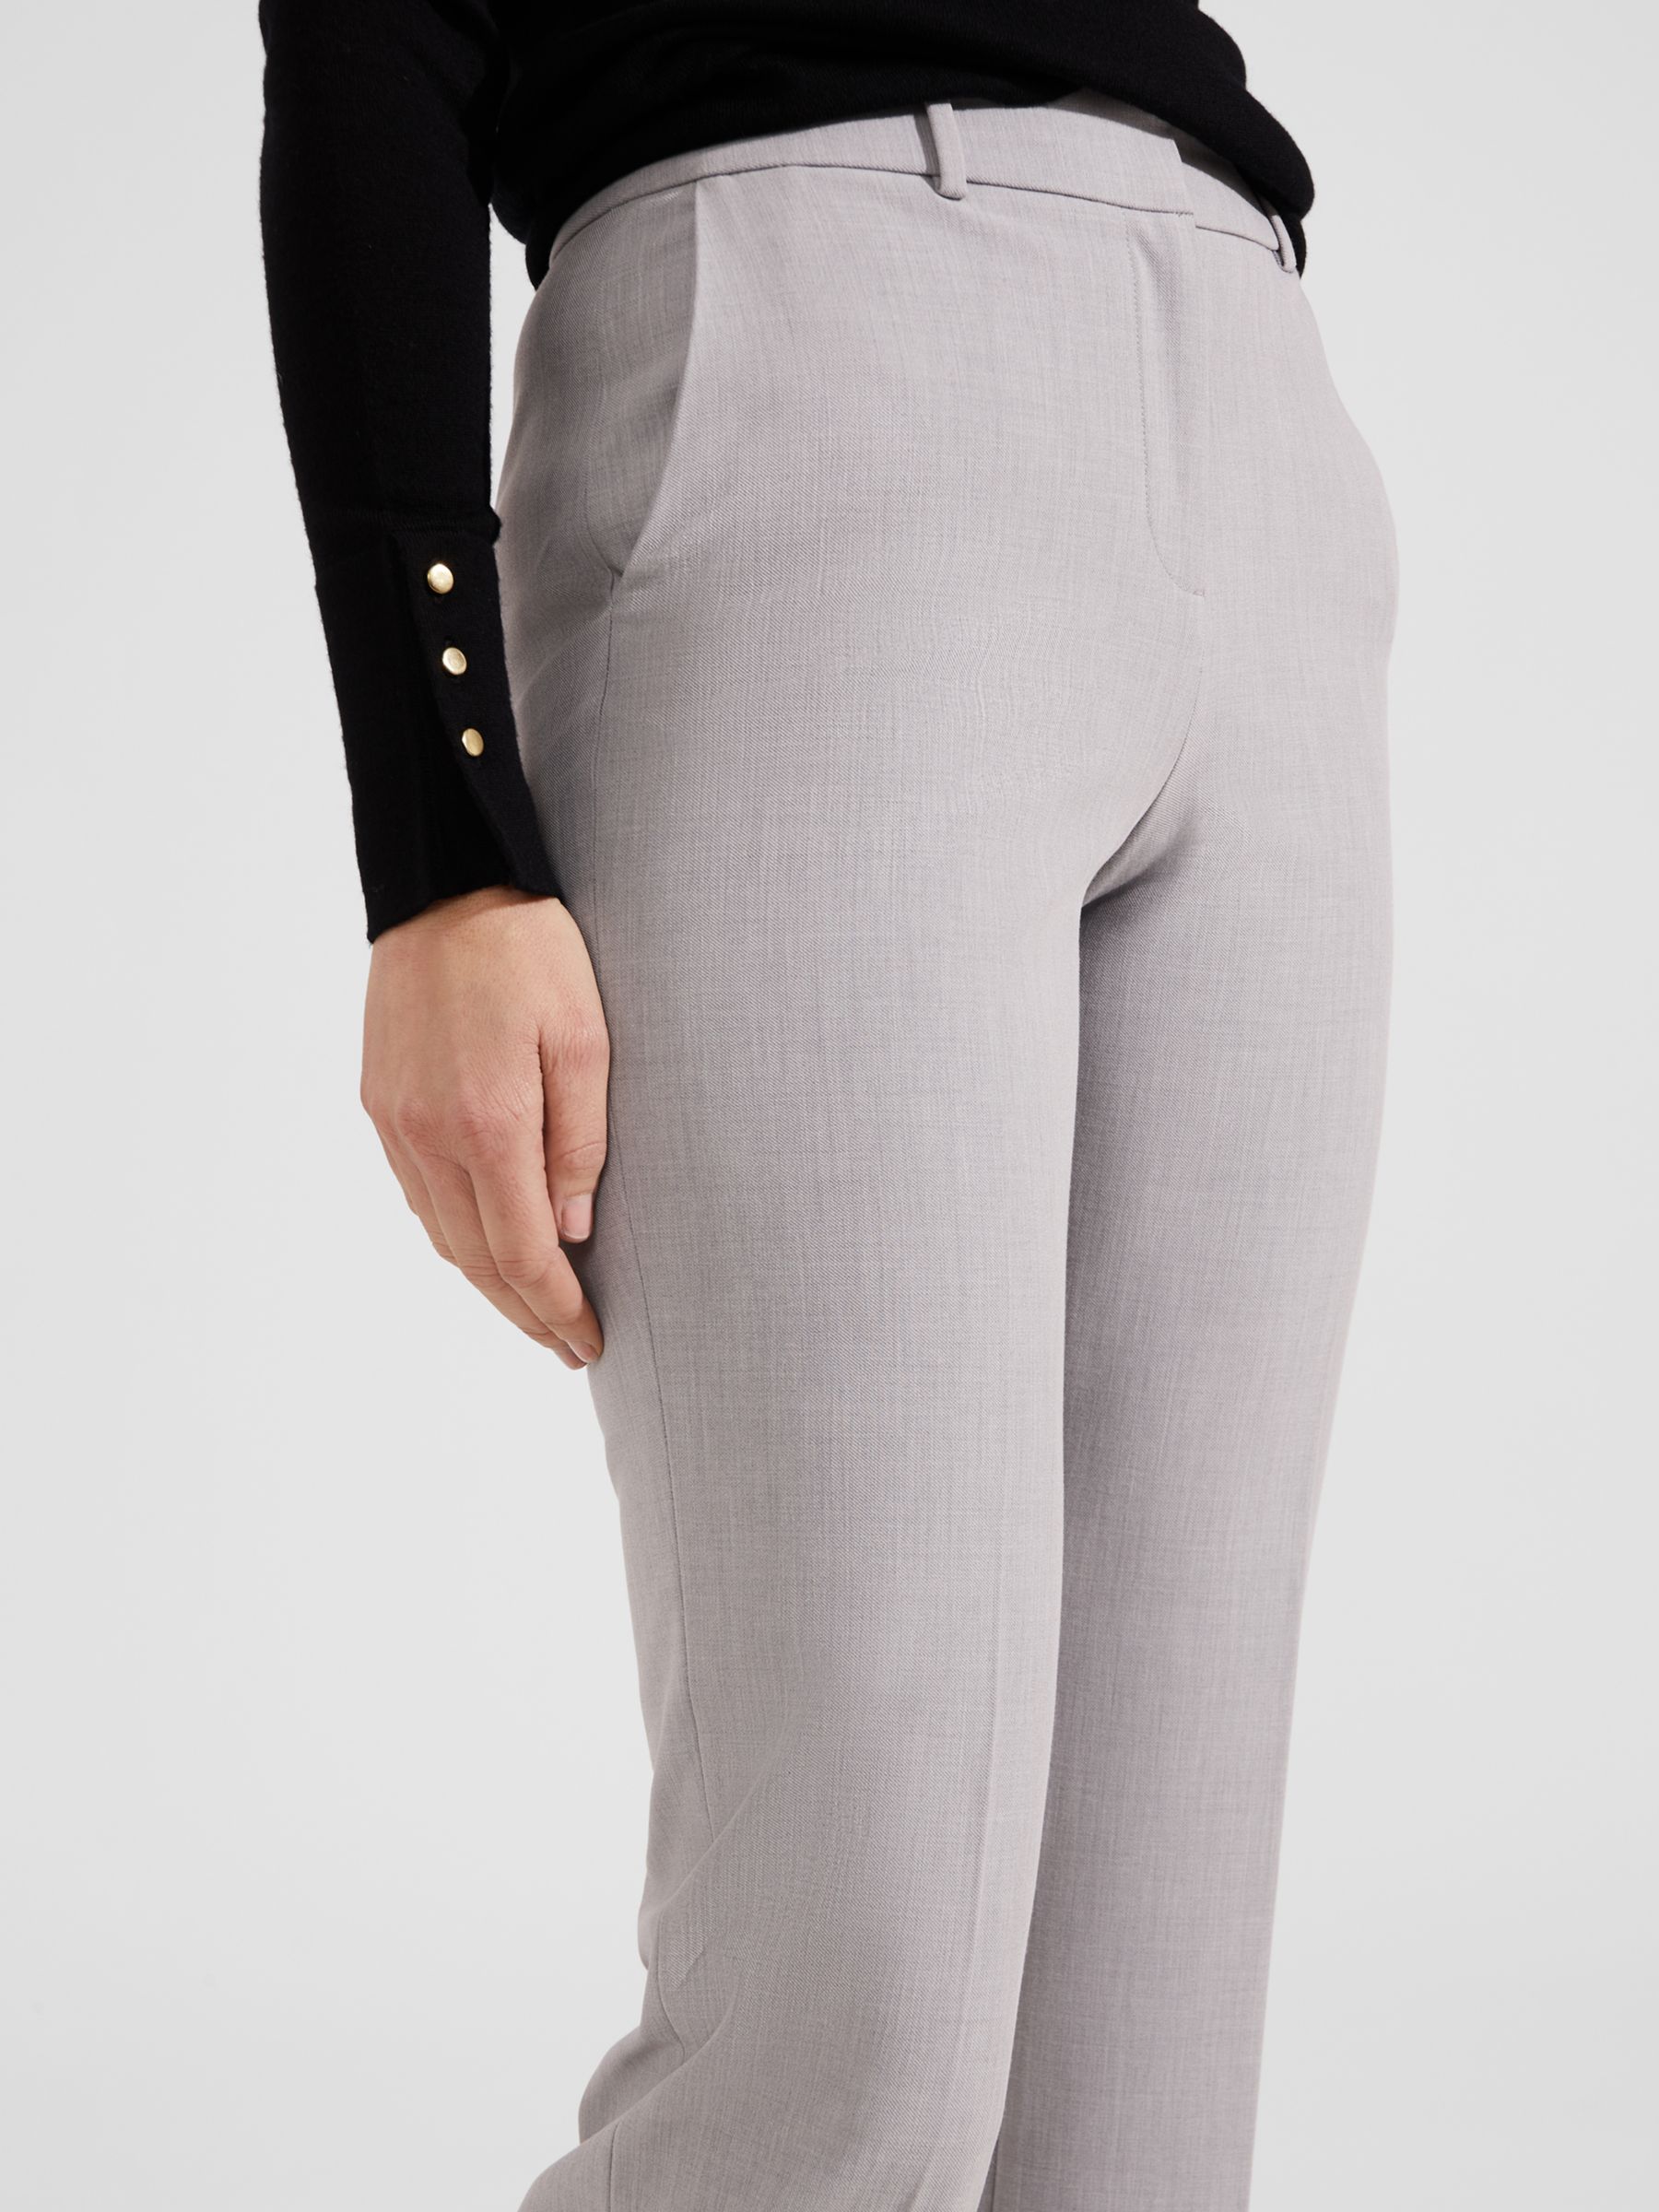 Hobbs Lauren Slim Fit Trousers, Pale Grey, 16